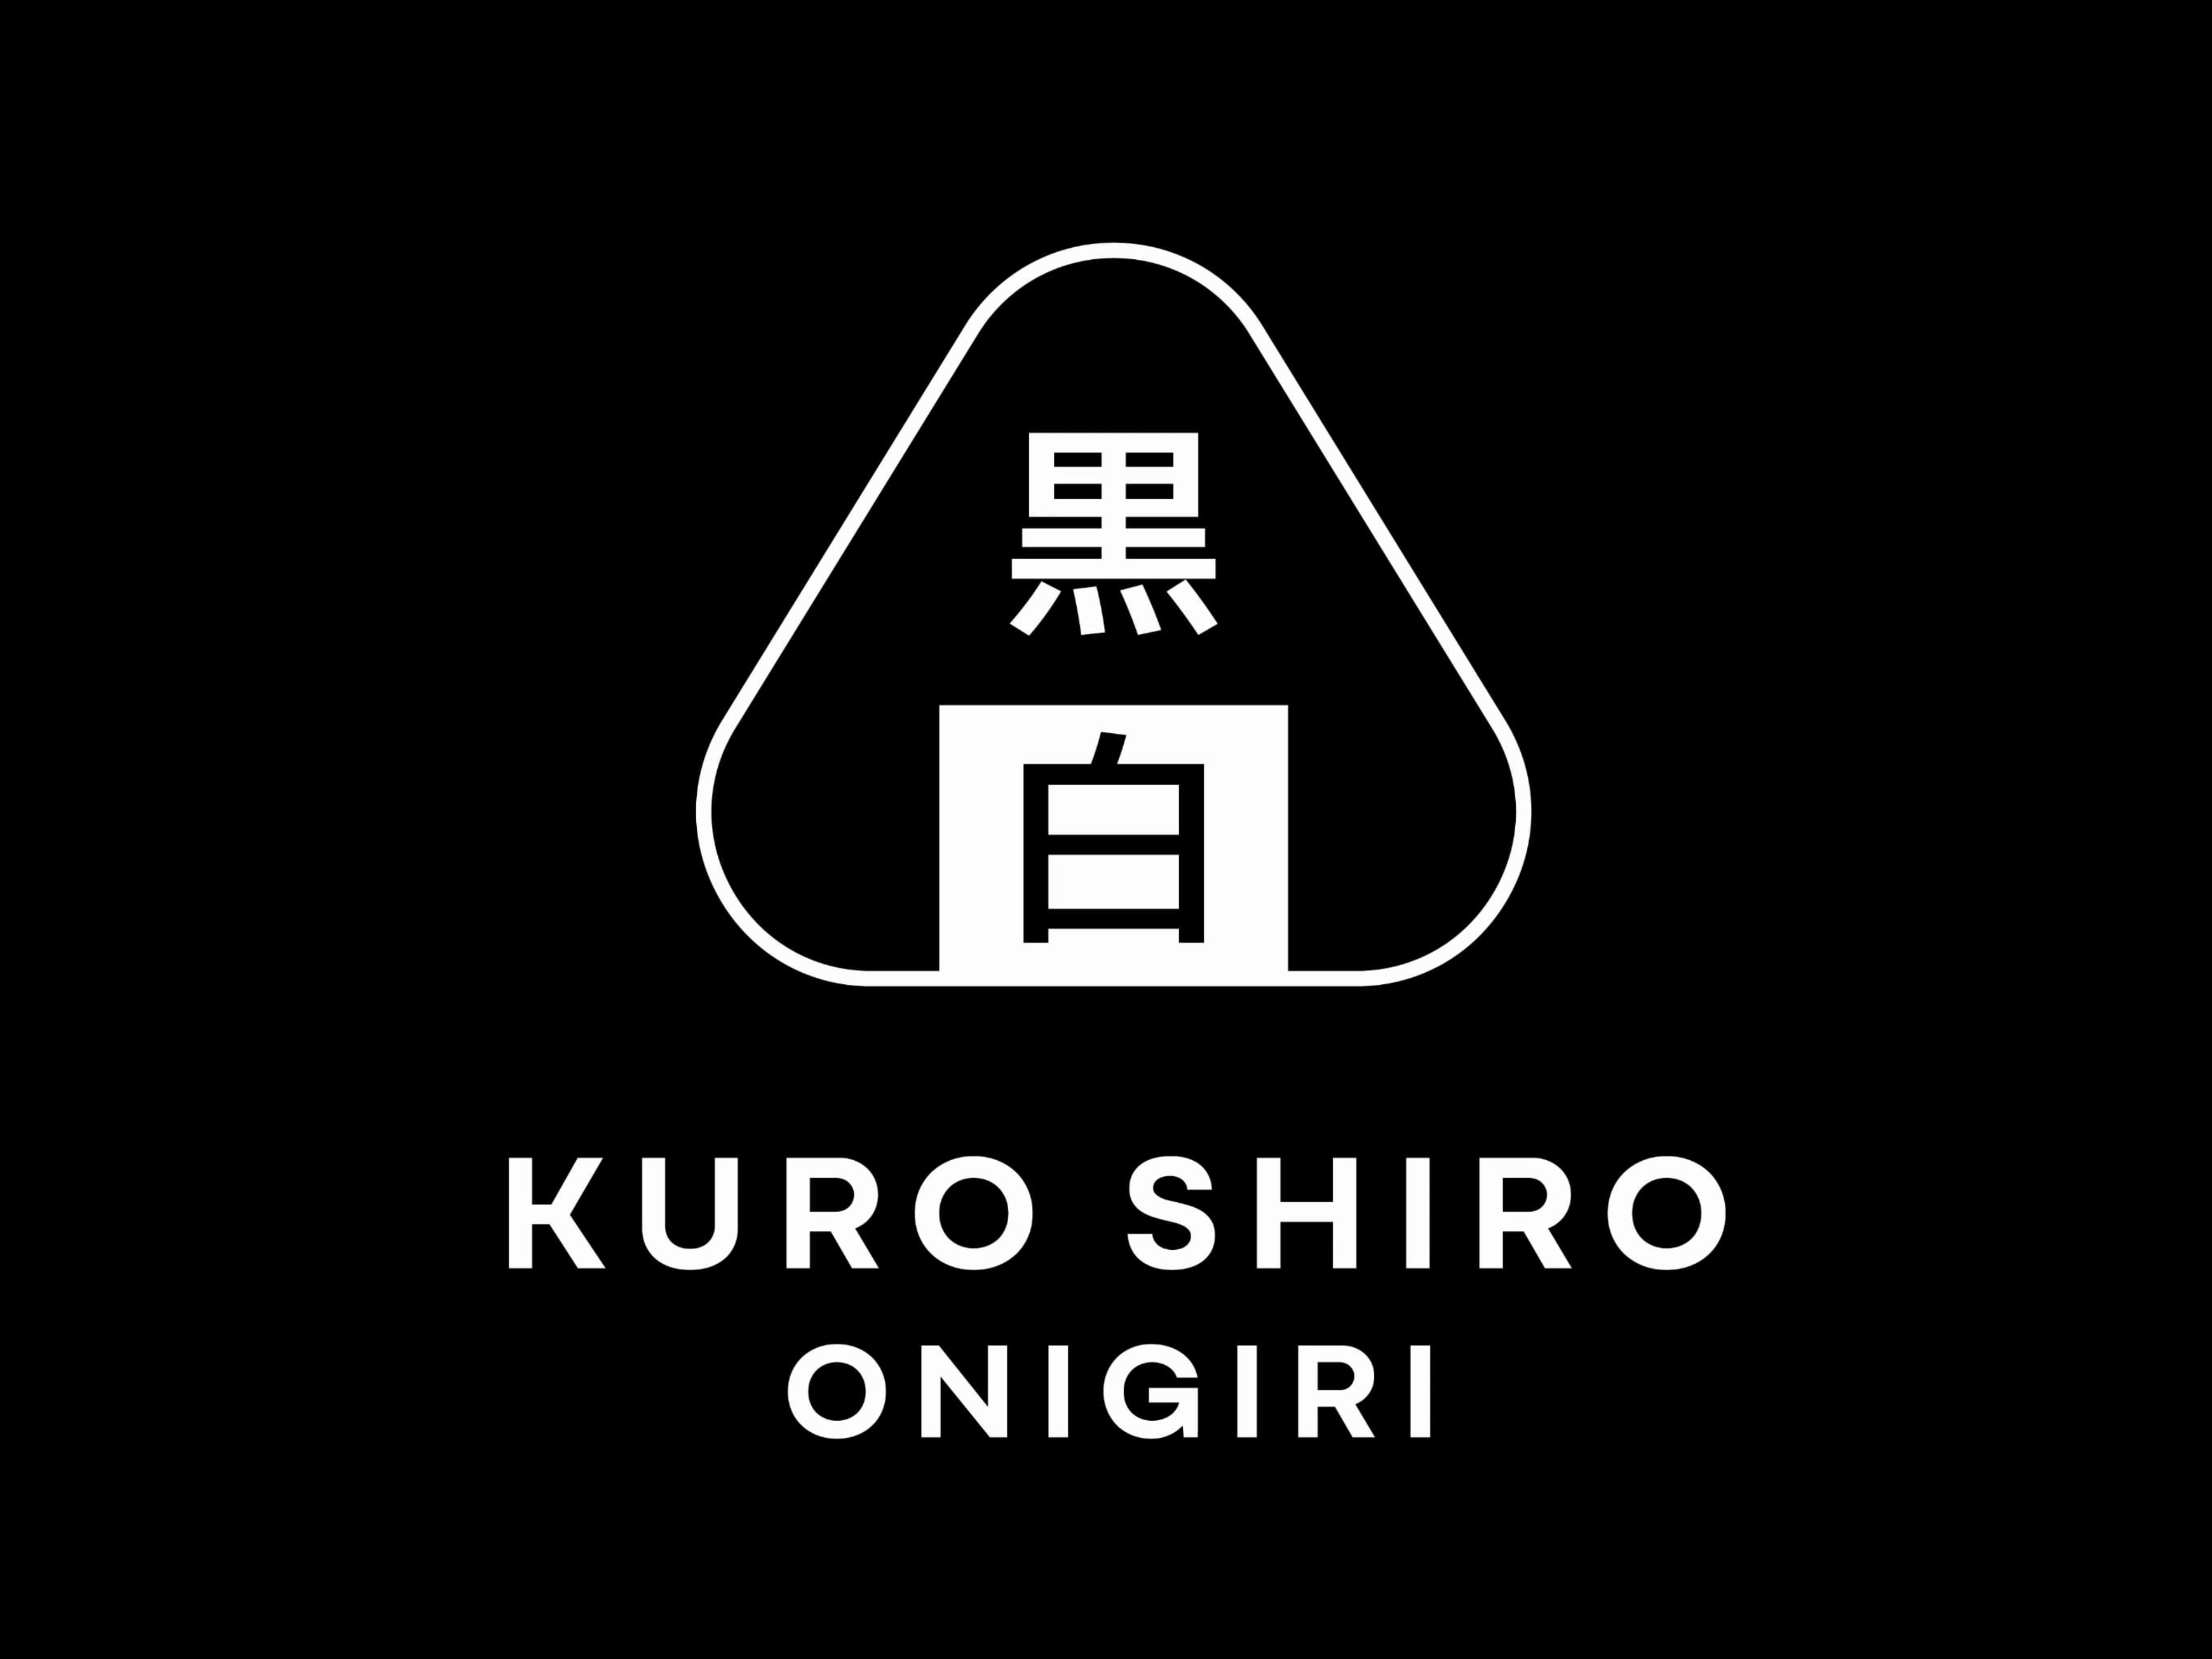 Kuro Shiro